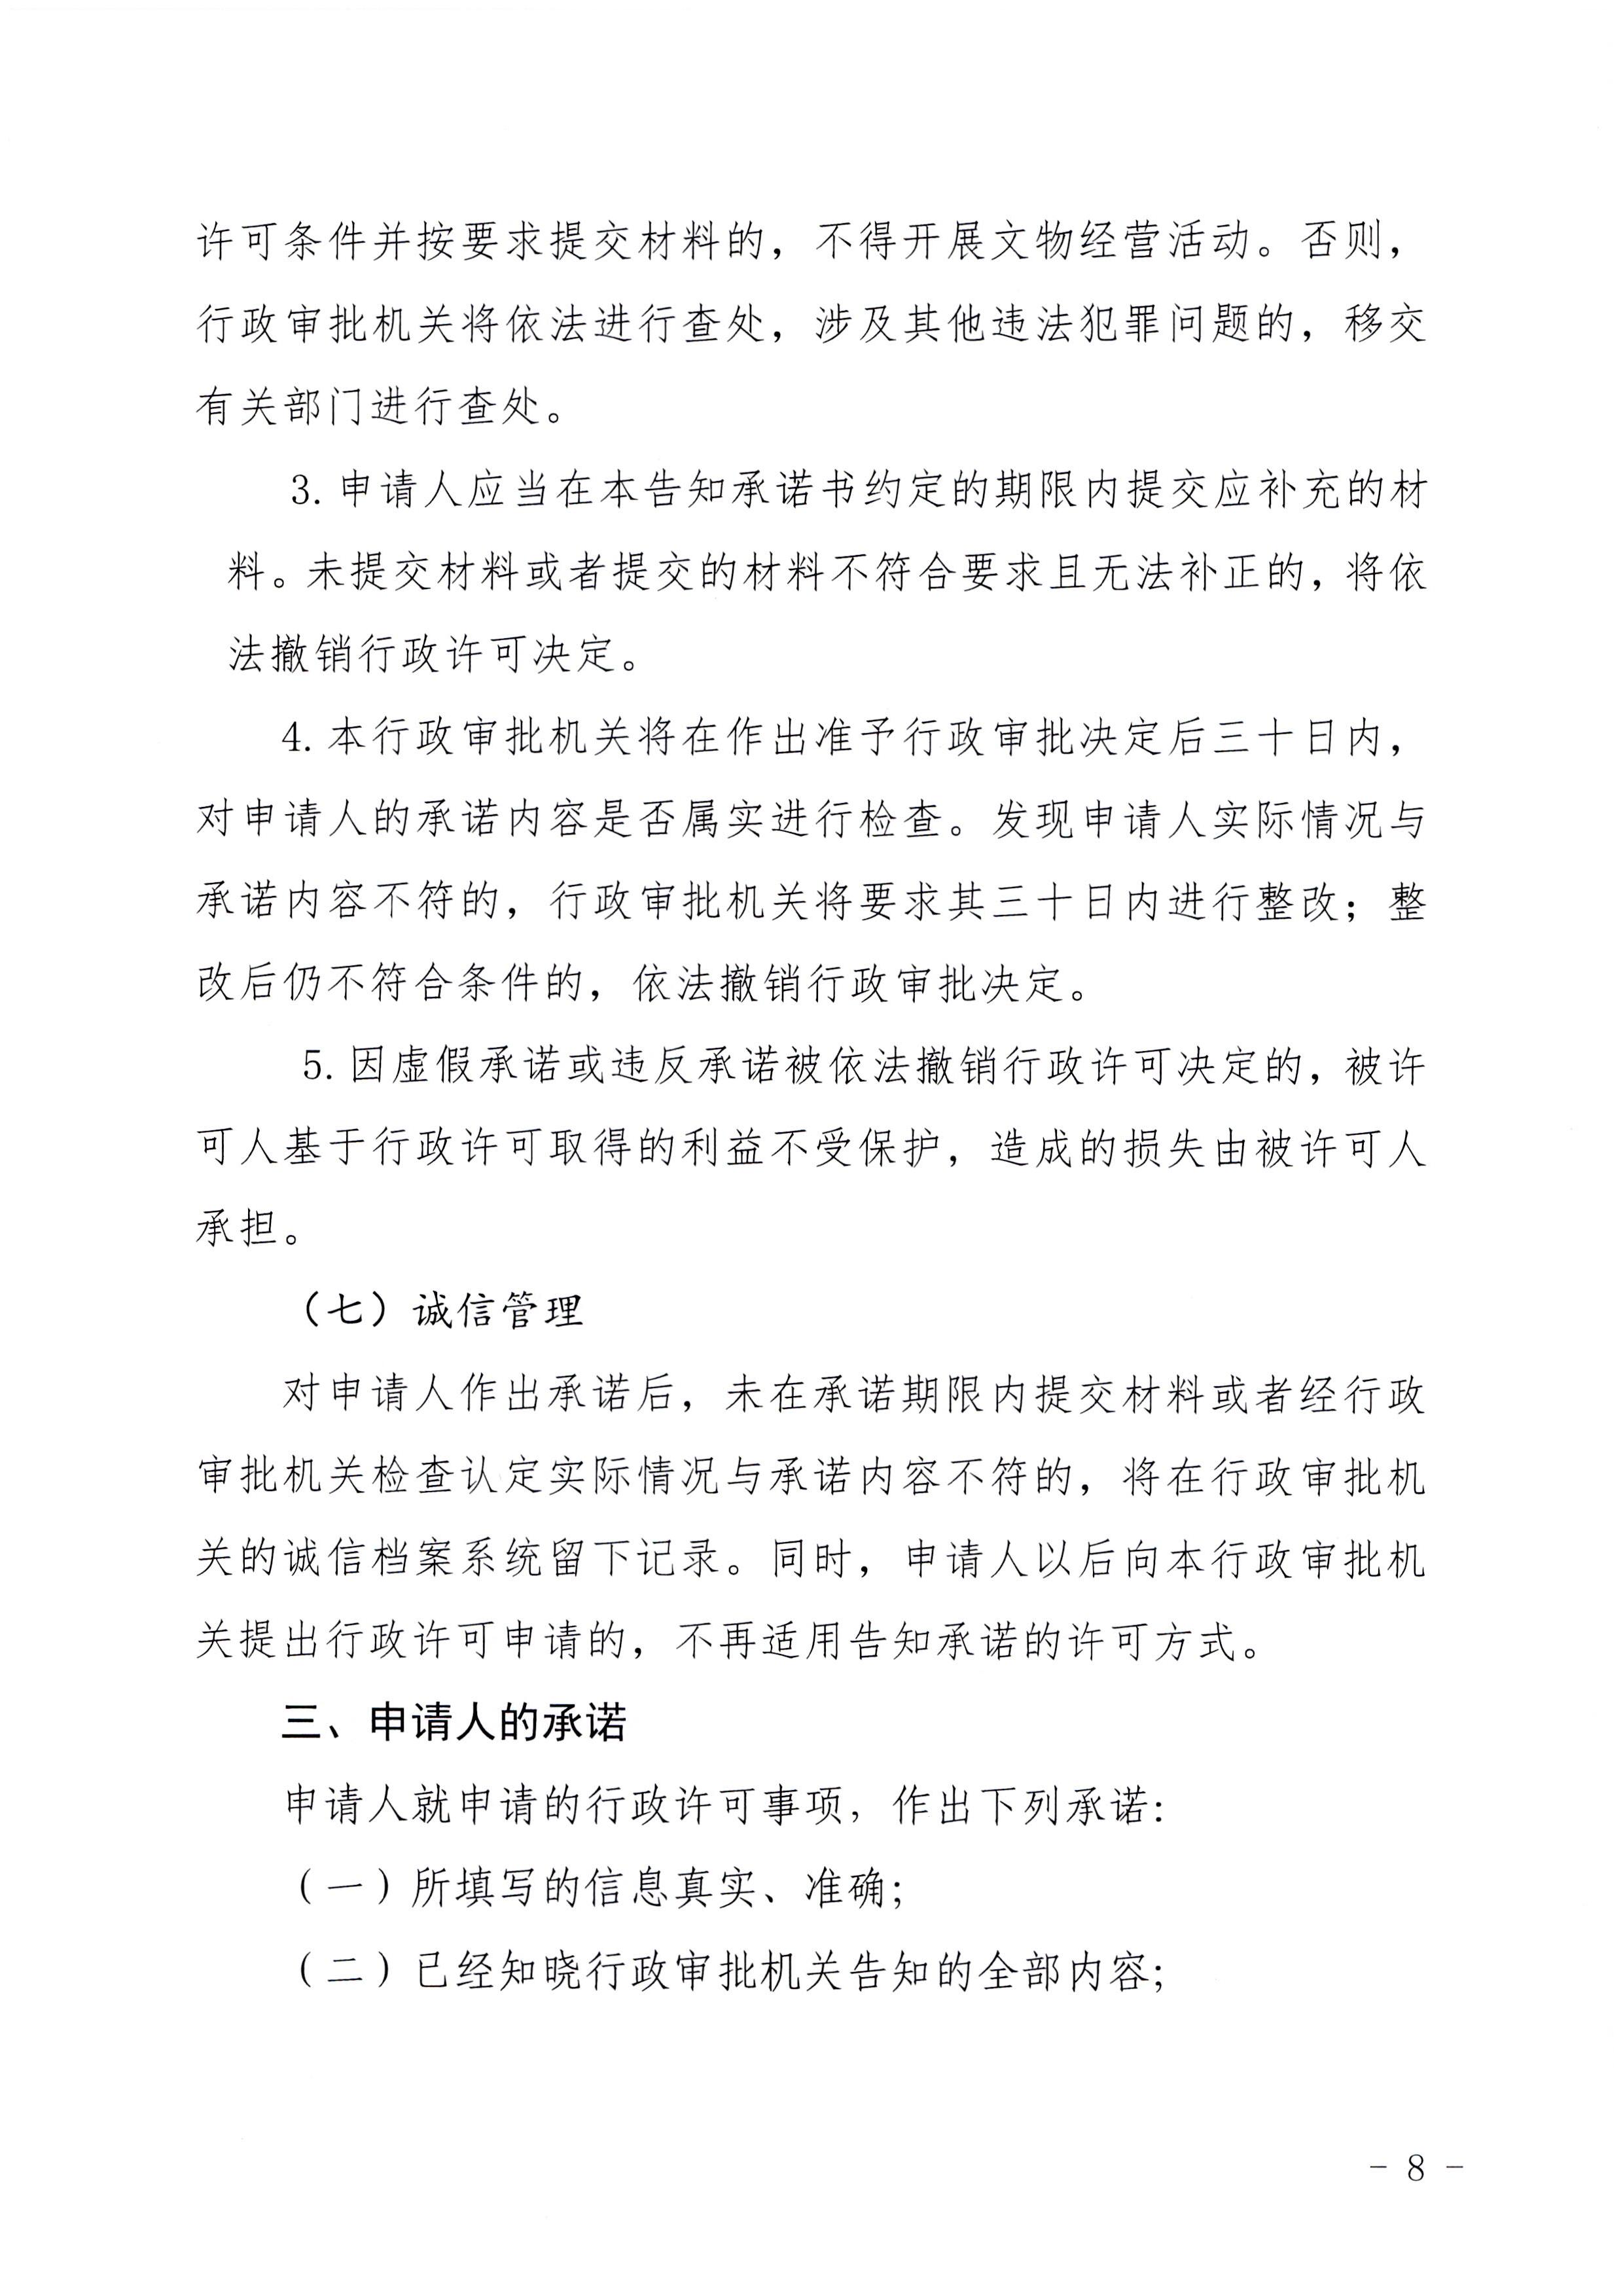 广东省文化和旅游厅印发证照分离改革实施方案的通知_页面_54.jpg